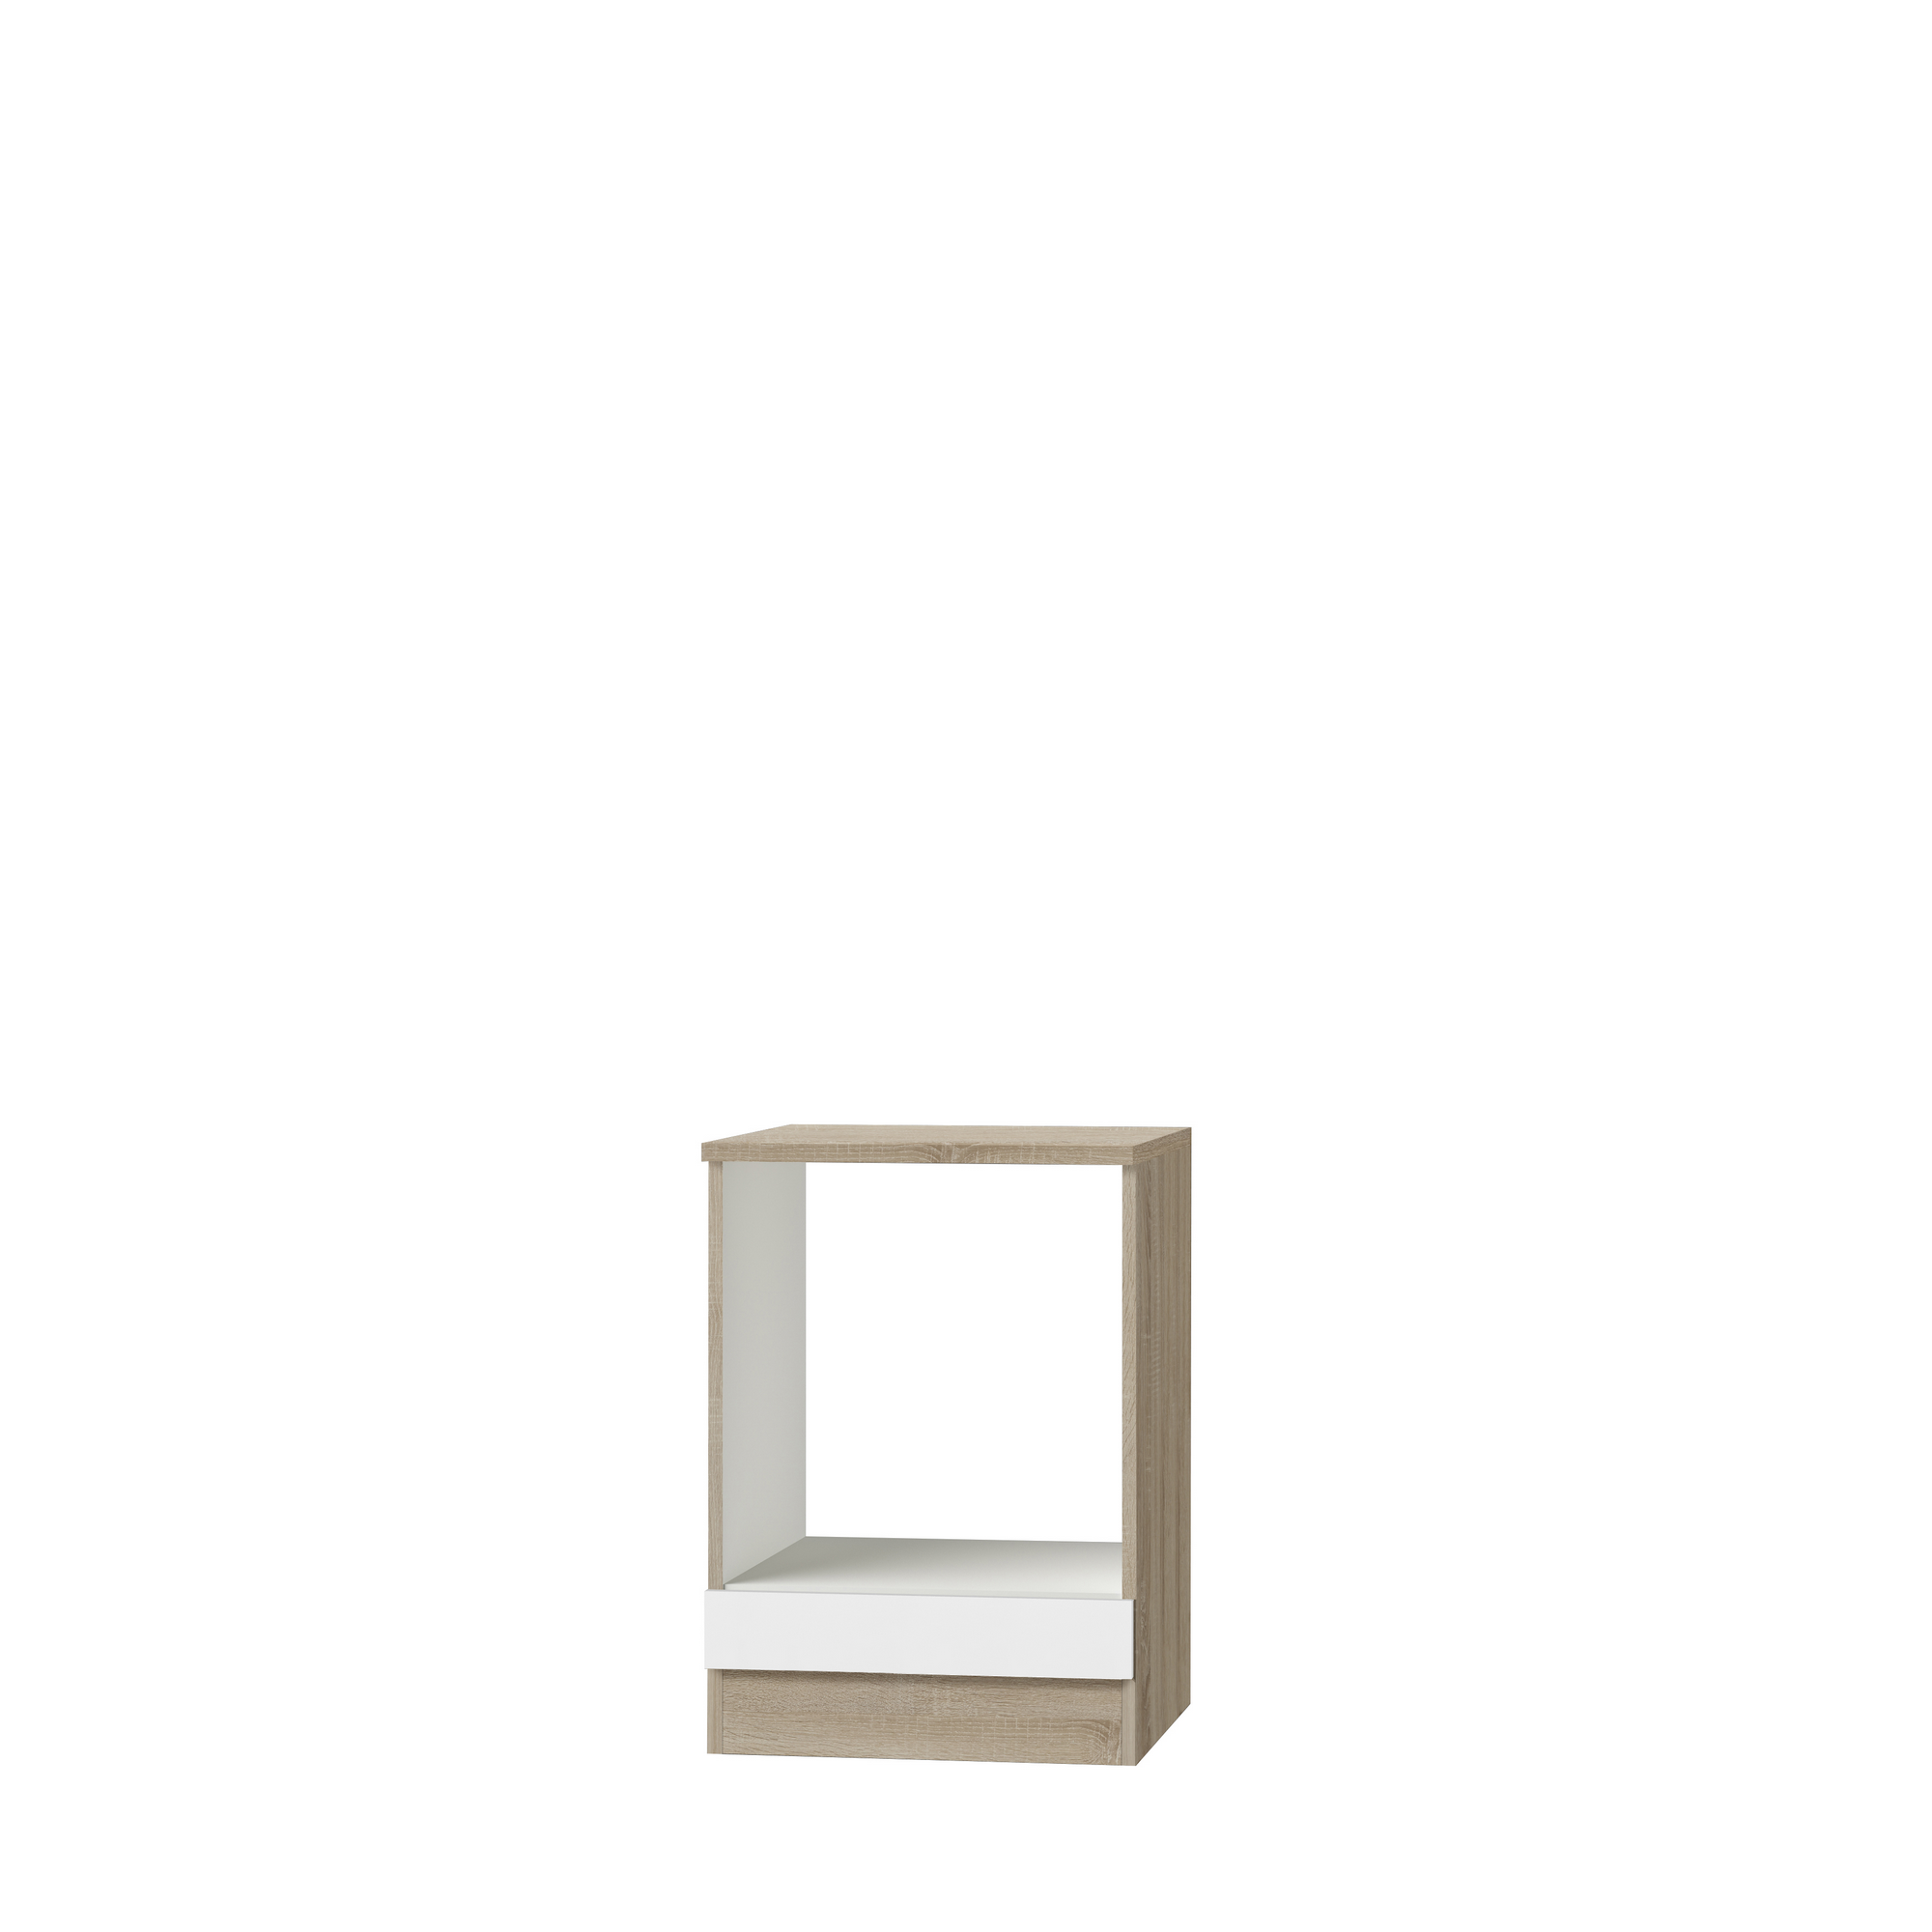 Herdumbauschrank 'OPTIkult Zamora' weiß/eichefarben 60 x 84,8 x 60 cm + product picture